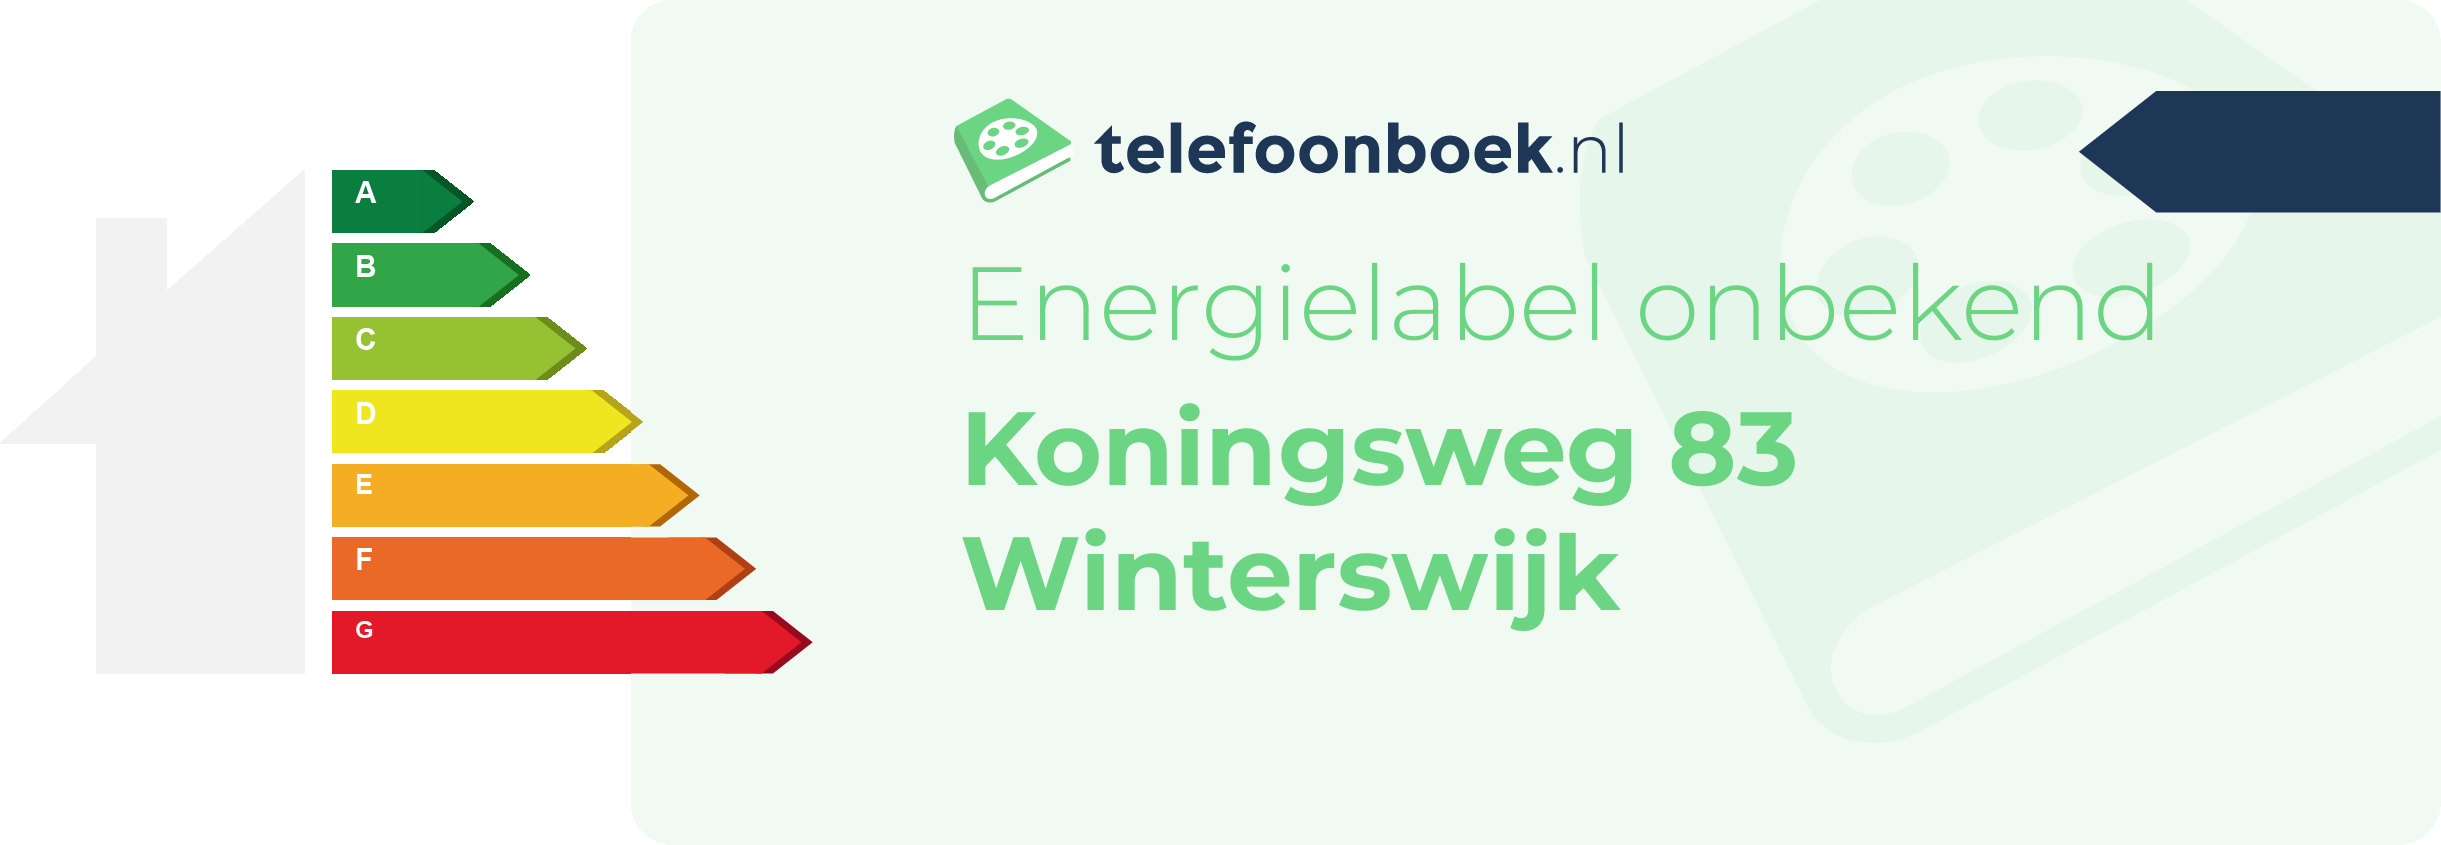 Energielabel Koningsweg 83 Winterswijk